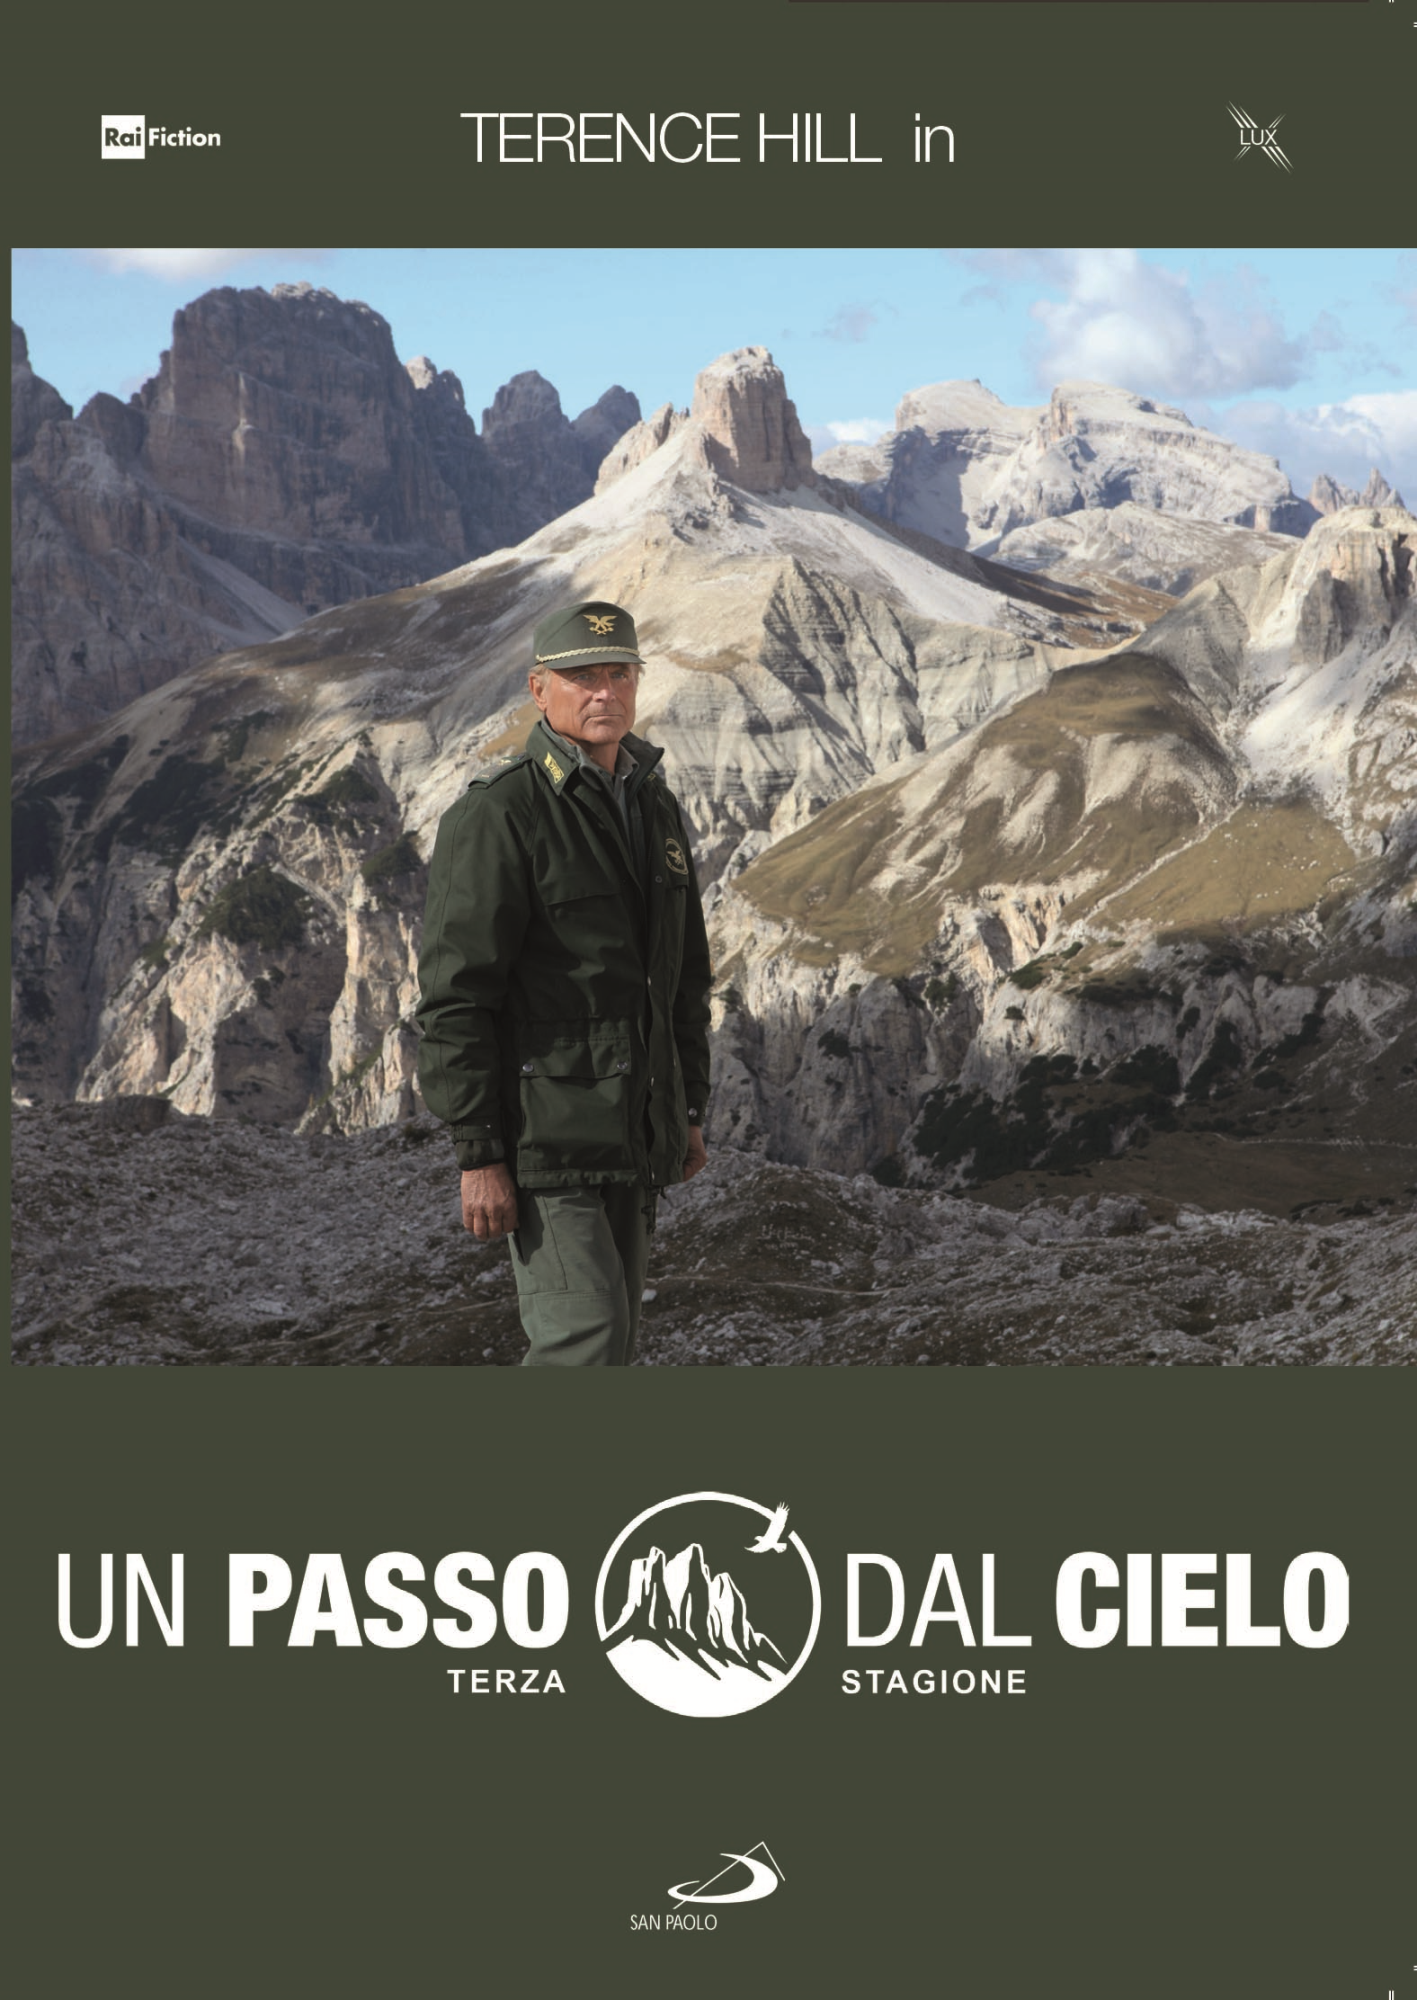 Dvd Passo Dal Cielo (Un) - Stagione 03 (5 Dvd) NUOVO SIGILLATO, EDIZIONE DEL 28/02/2020 SUBITO DISPONIBILE